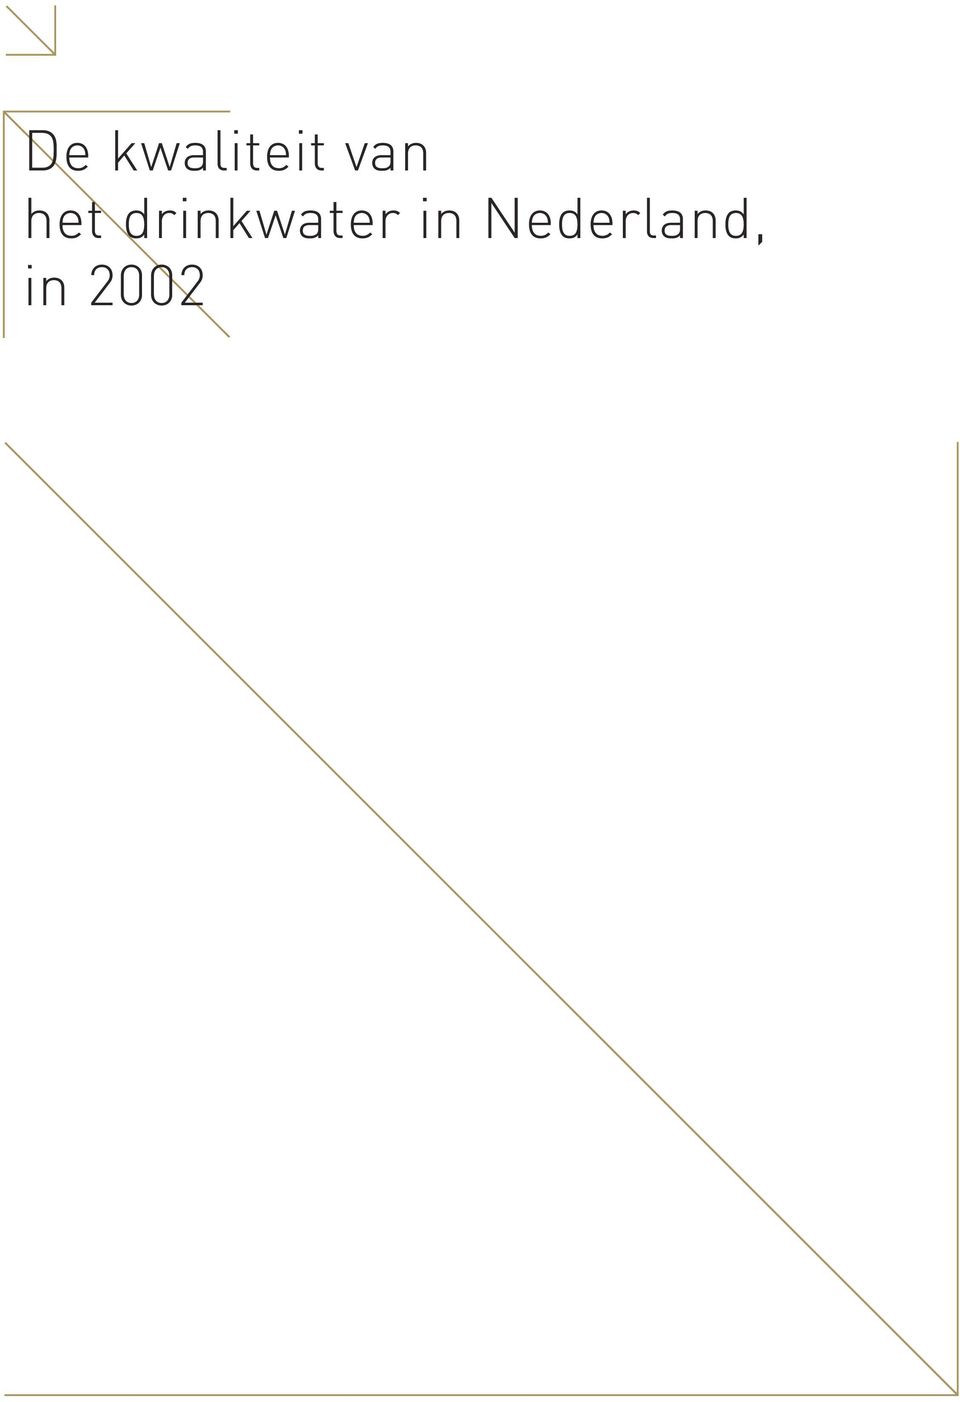 Nederland, in 2002